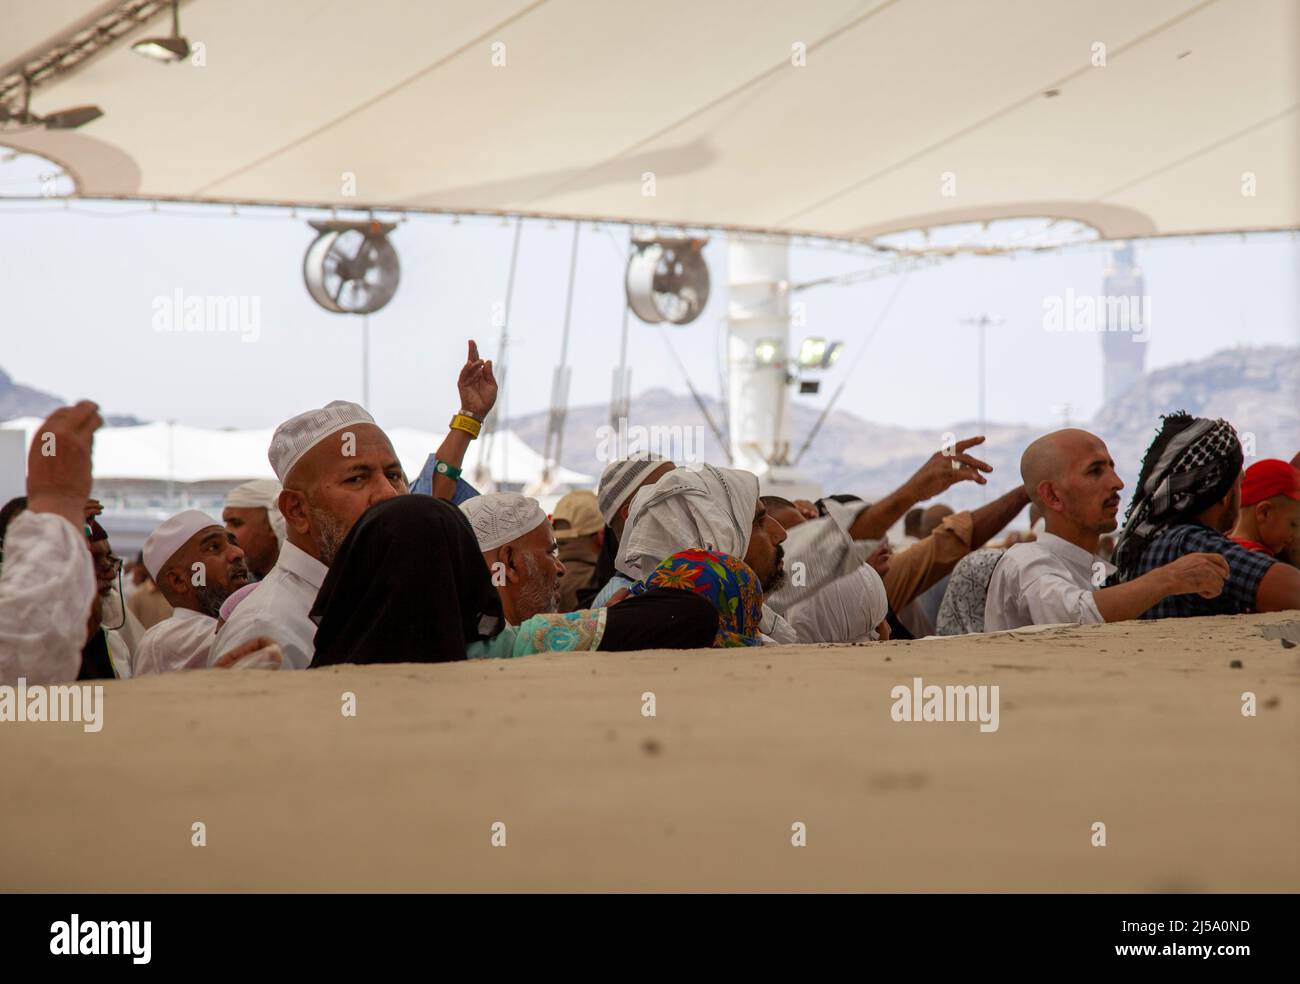 Peregrinos que realizan ritual de lapidación durante la temporada de hajj en Makkah, Arabia Saudita Foto de stock